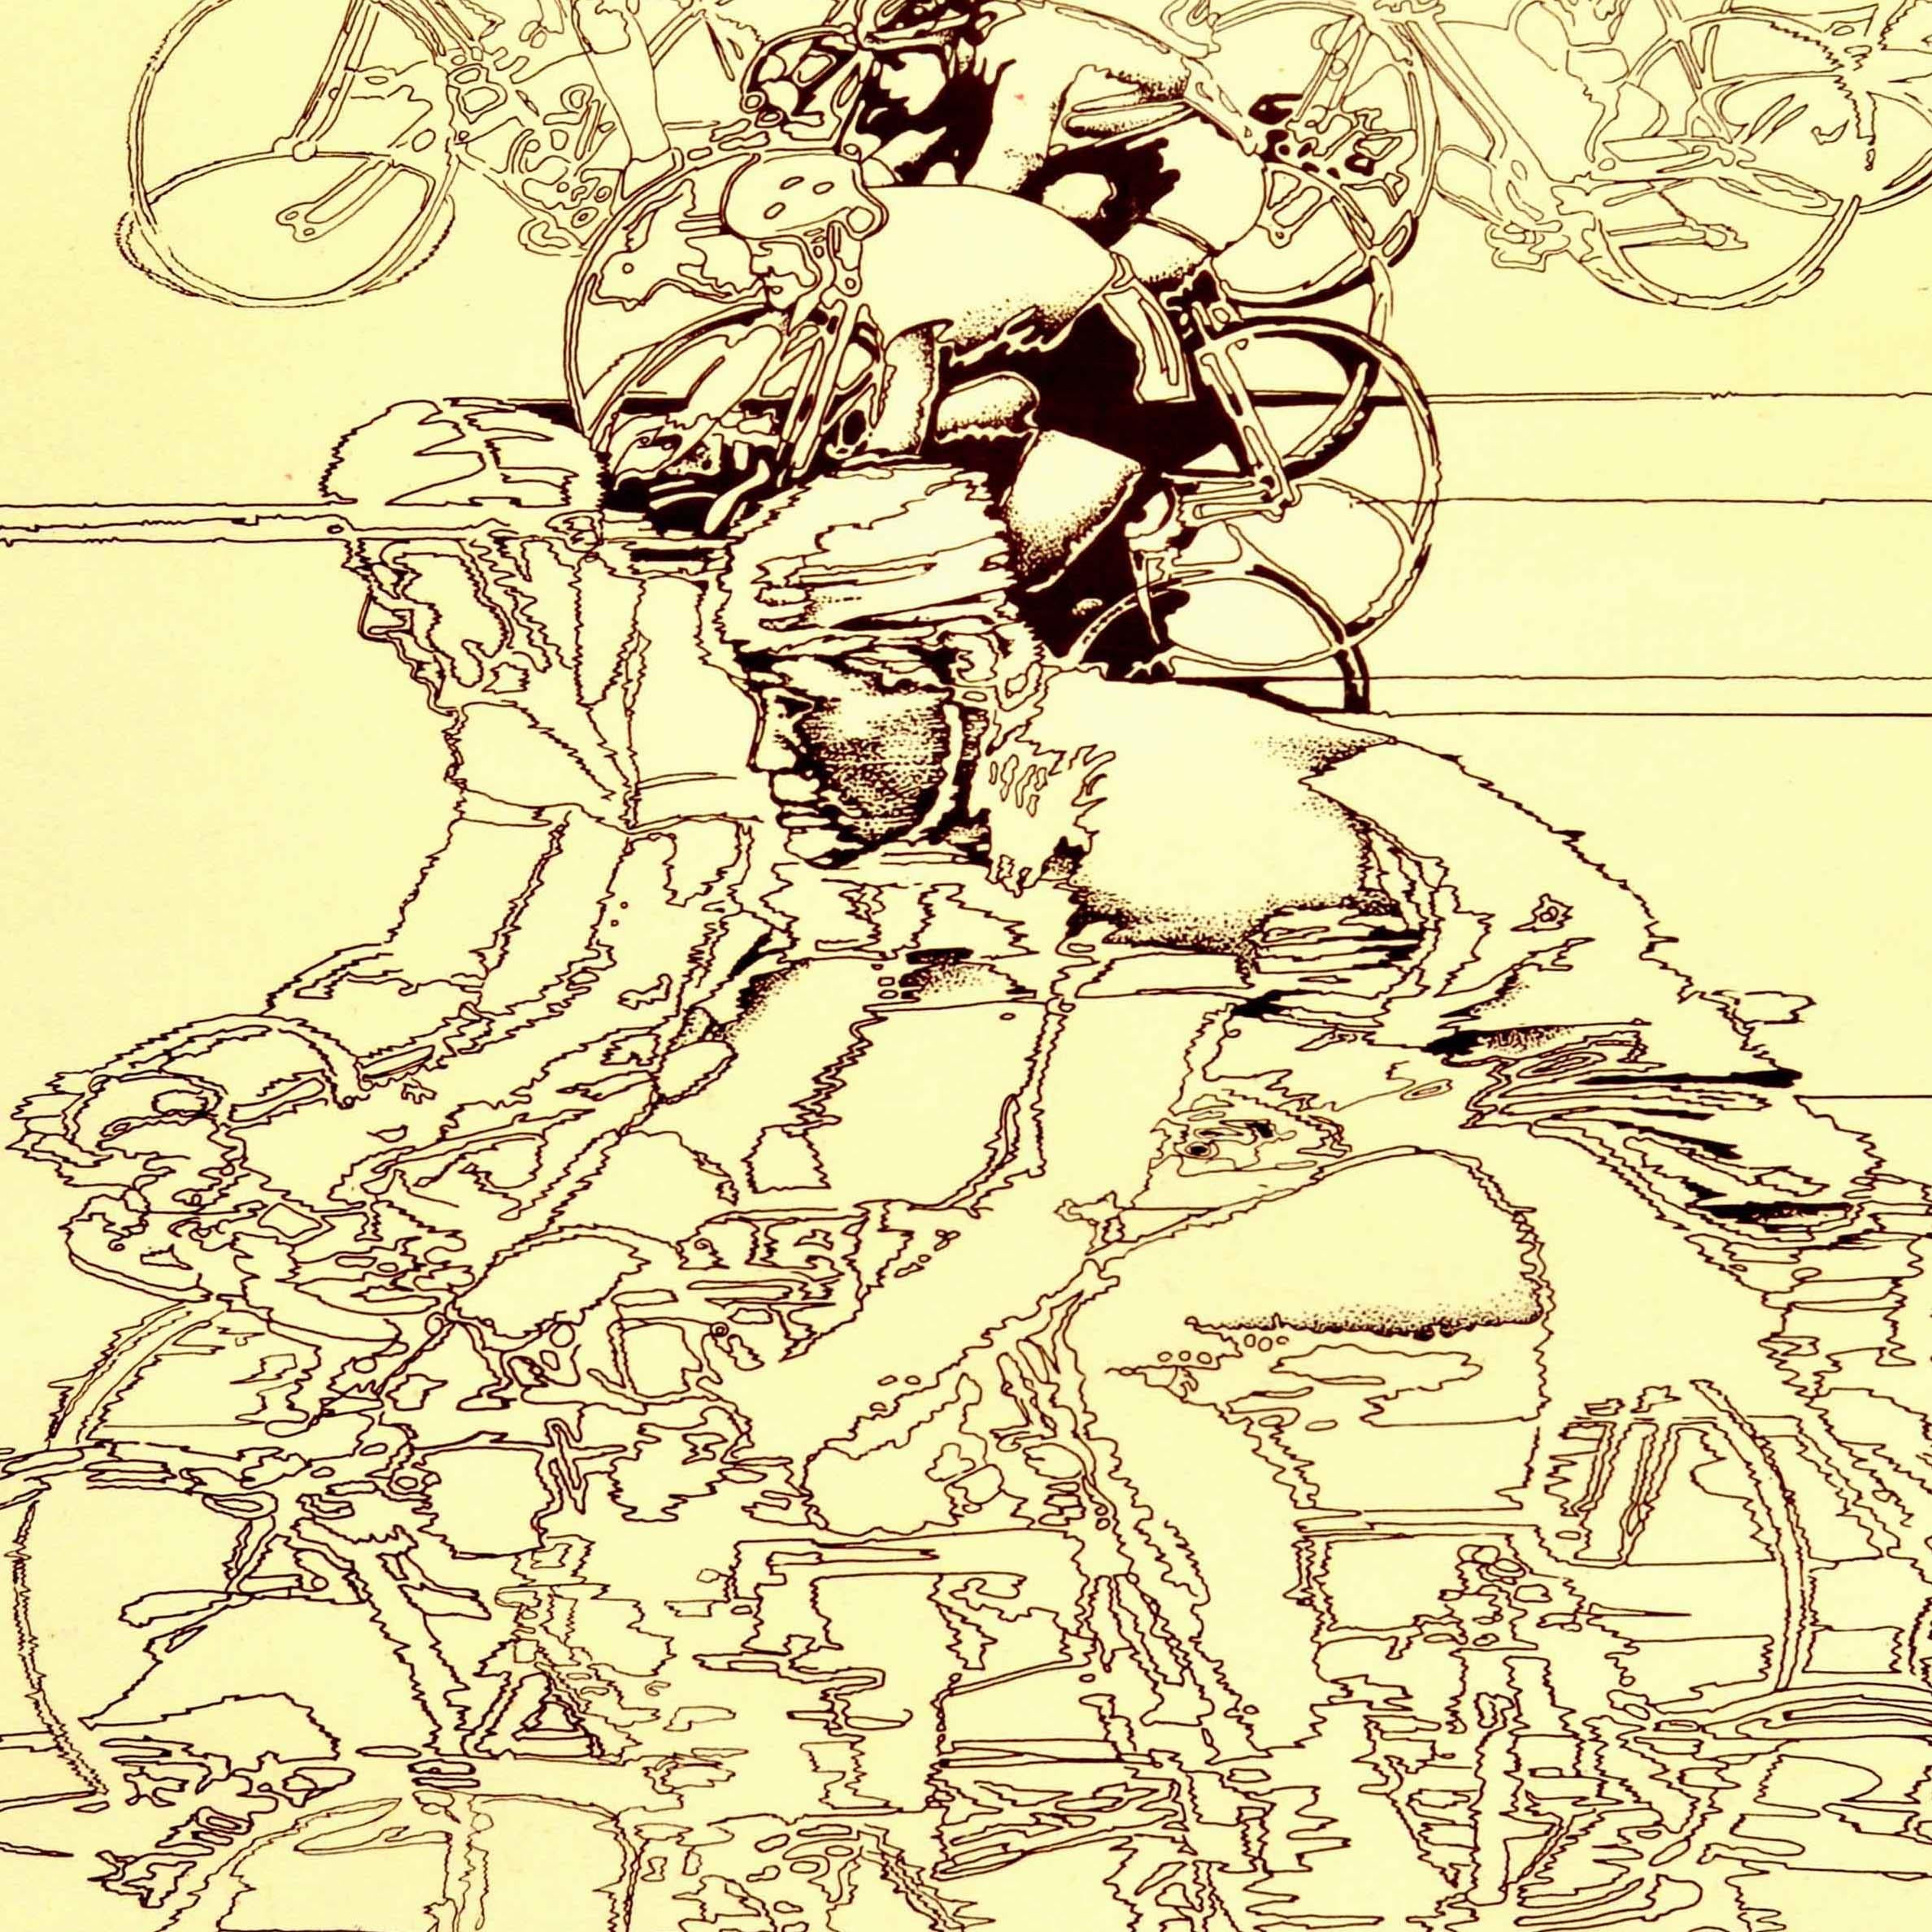 Original Vintage-Sport-Plakat für die Olympischen Spiele 1980 in Moskau Russland mit einem dynamischen Design von Radfahrern Geschwindigkeit um eine Strecke im Wettbewerb gegeneinander auf ihren Fahrrädern mit dem Radfahren Veranstaltung Symbol und